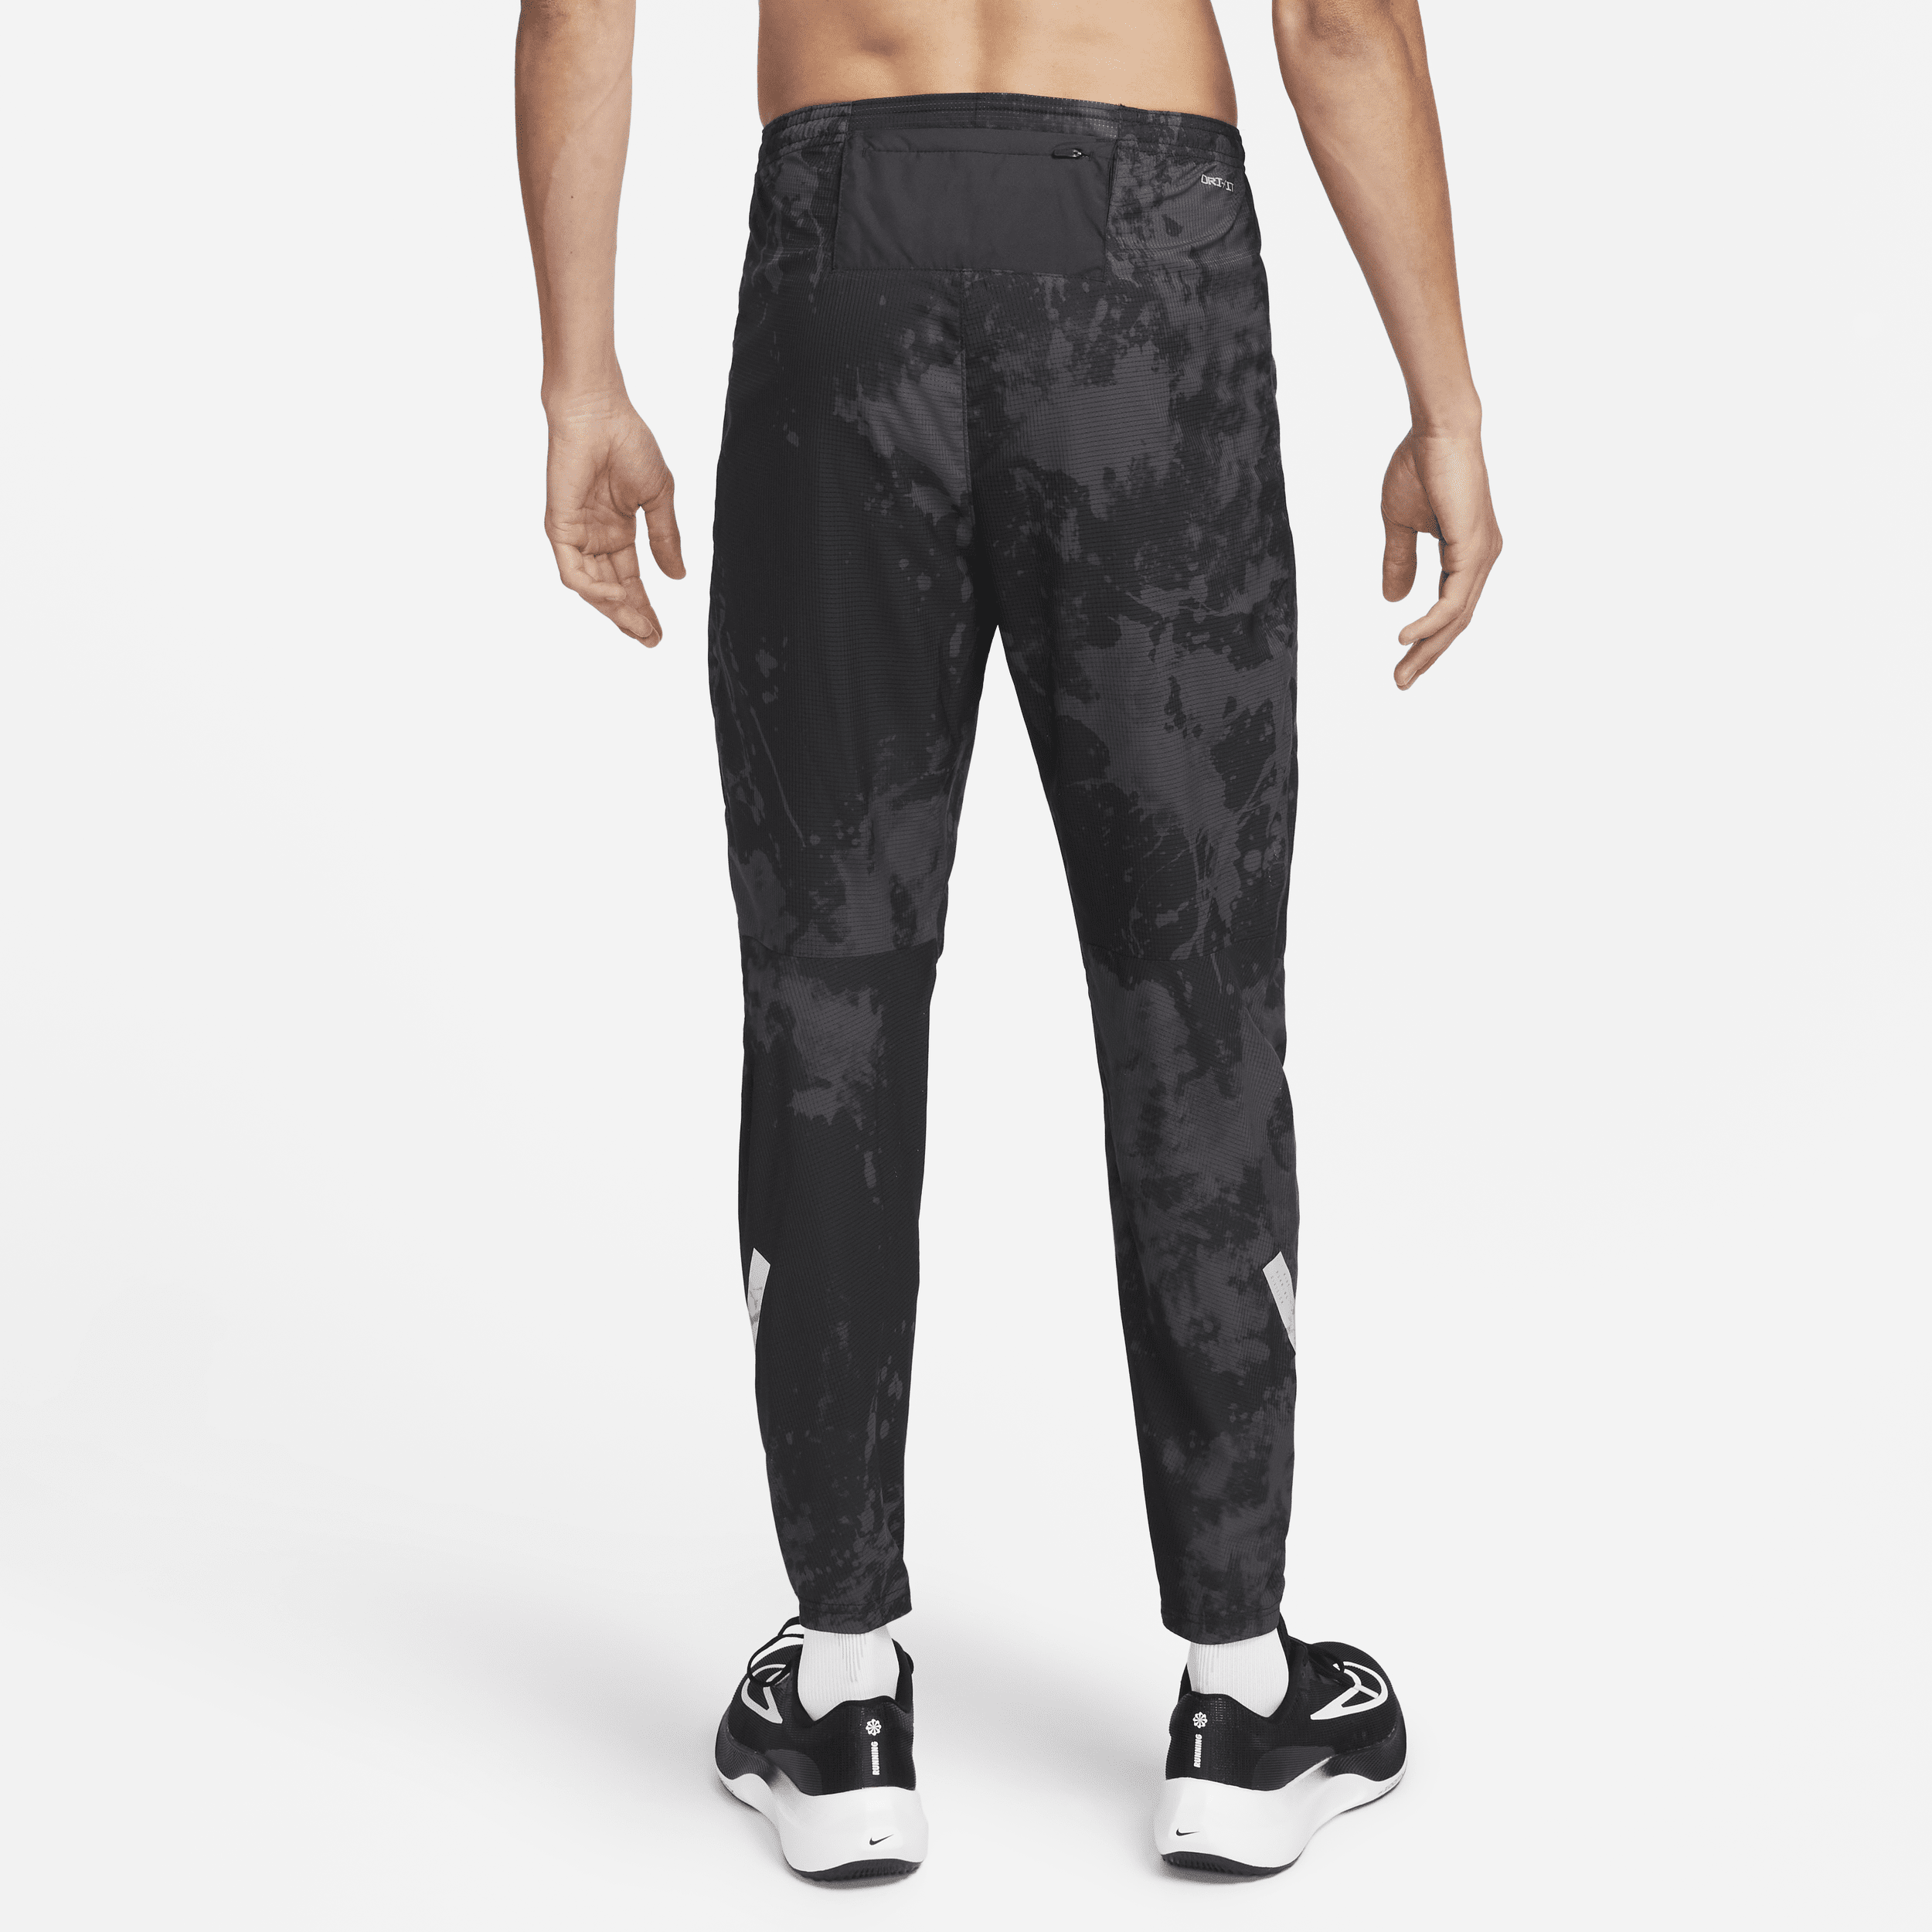 New Nike Dri-Fit Flex Swift Running Pants Mens Size XXL Gridiron 928583-081  | eBay